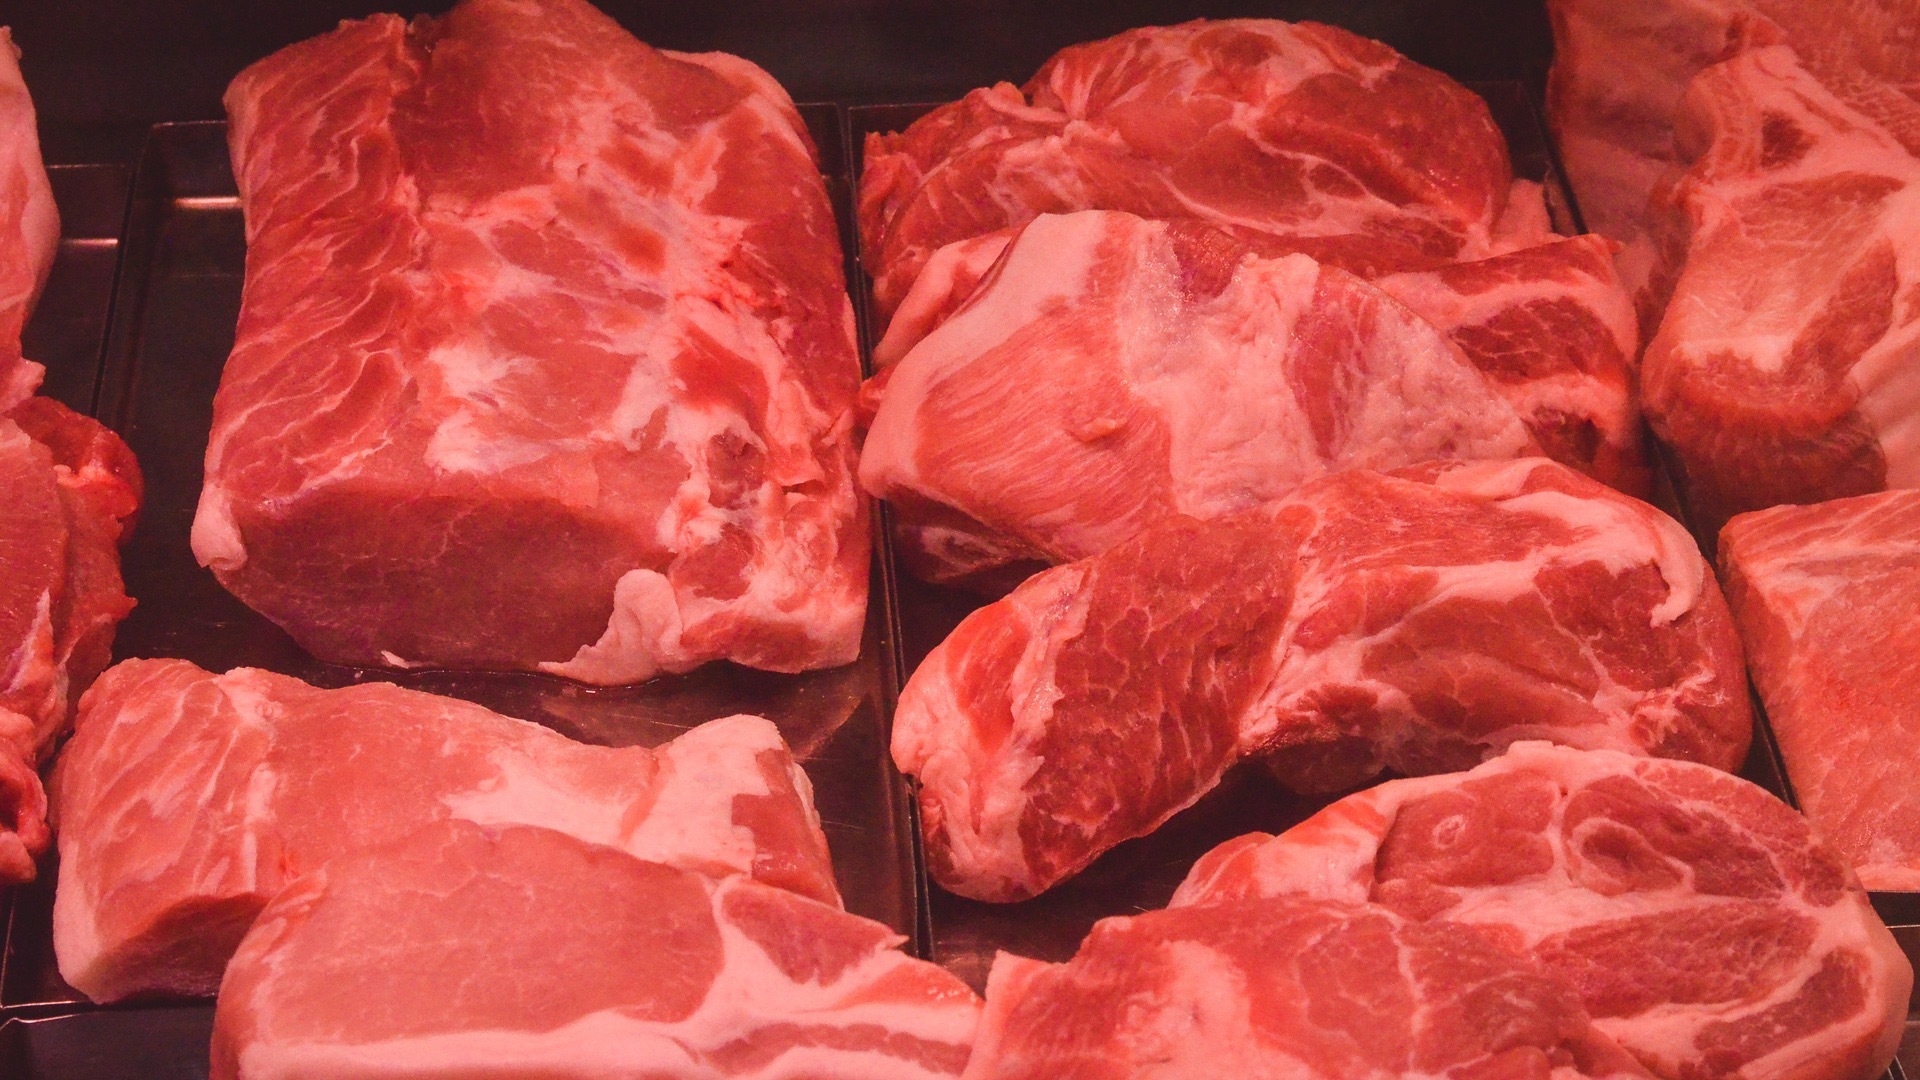 Центробанк объяснил высокие цены в Челябинской области ростом цен на мясо